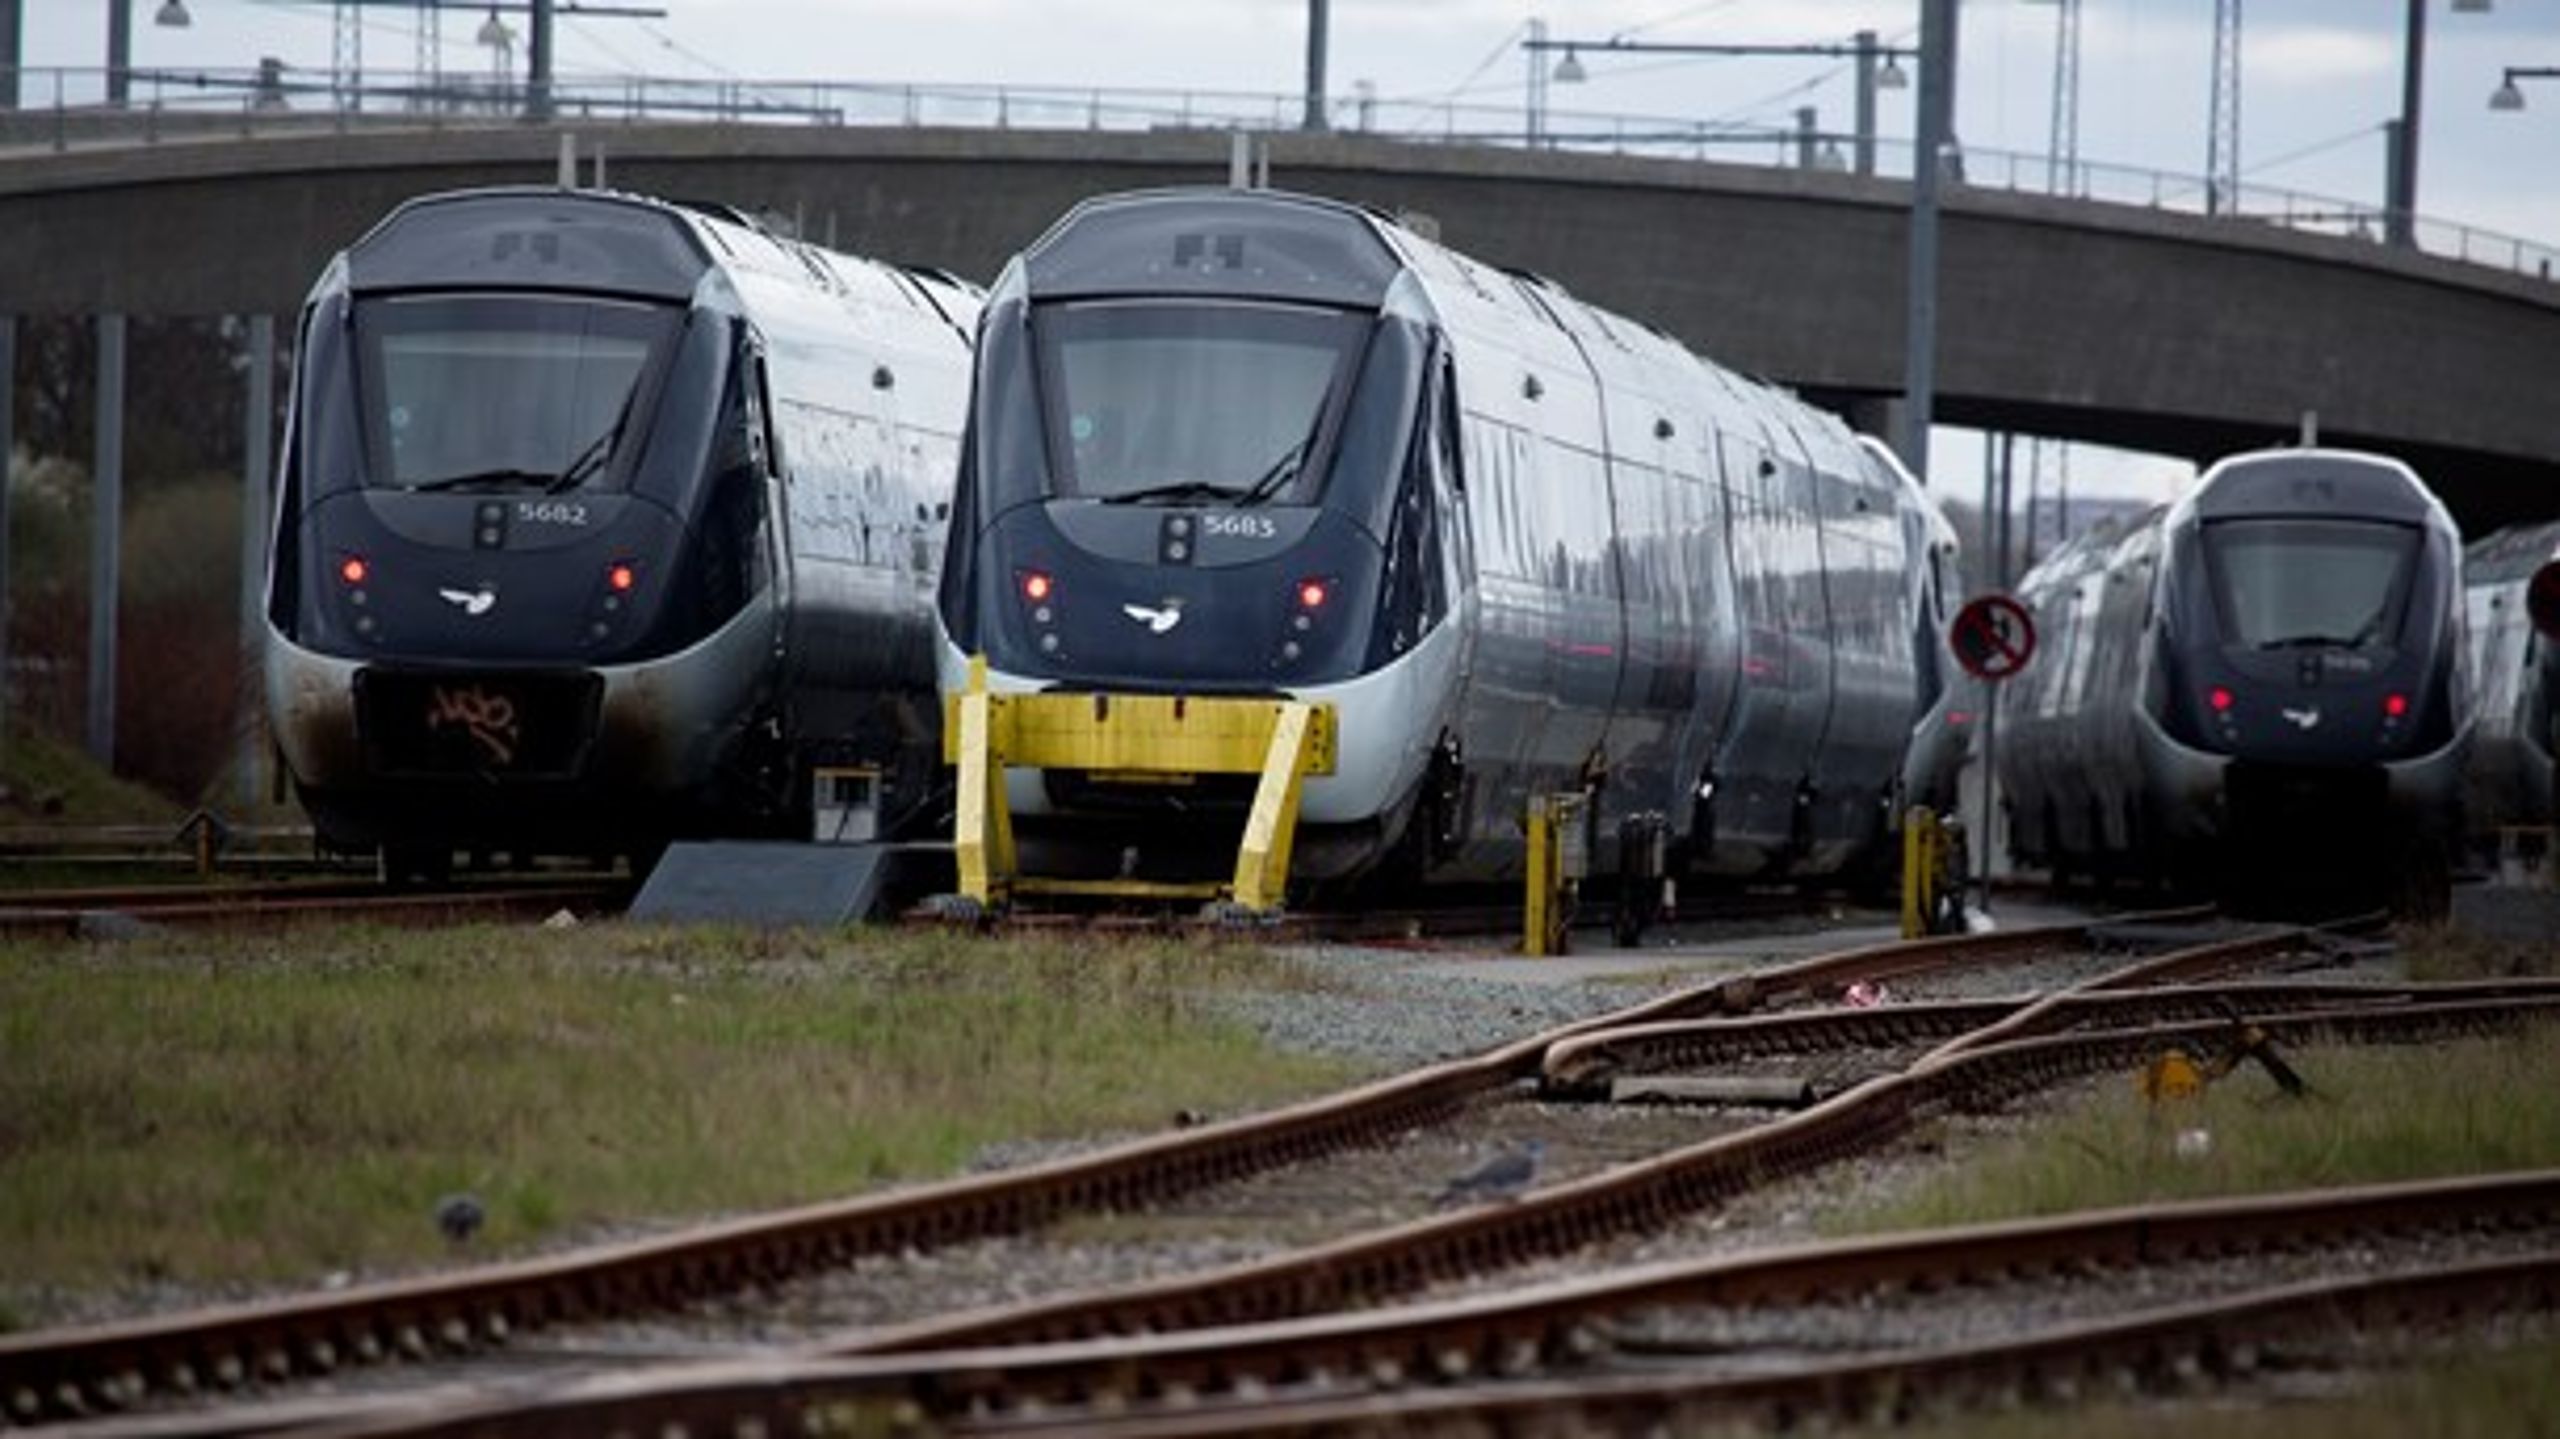 Politisk er det ikke engang besluttet endnu, om vi&nbsp;overhovedet&nbsp;skal købe tog, der kan køre 250 km/t. Det kan vi gøre bedre, skriver Mads Jensen Møller og Henrik Garver.